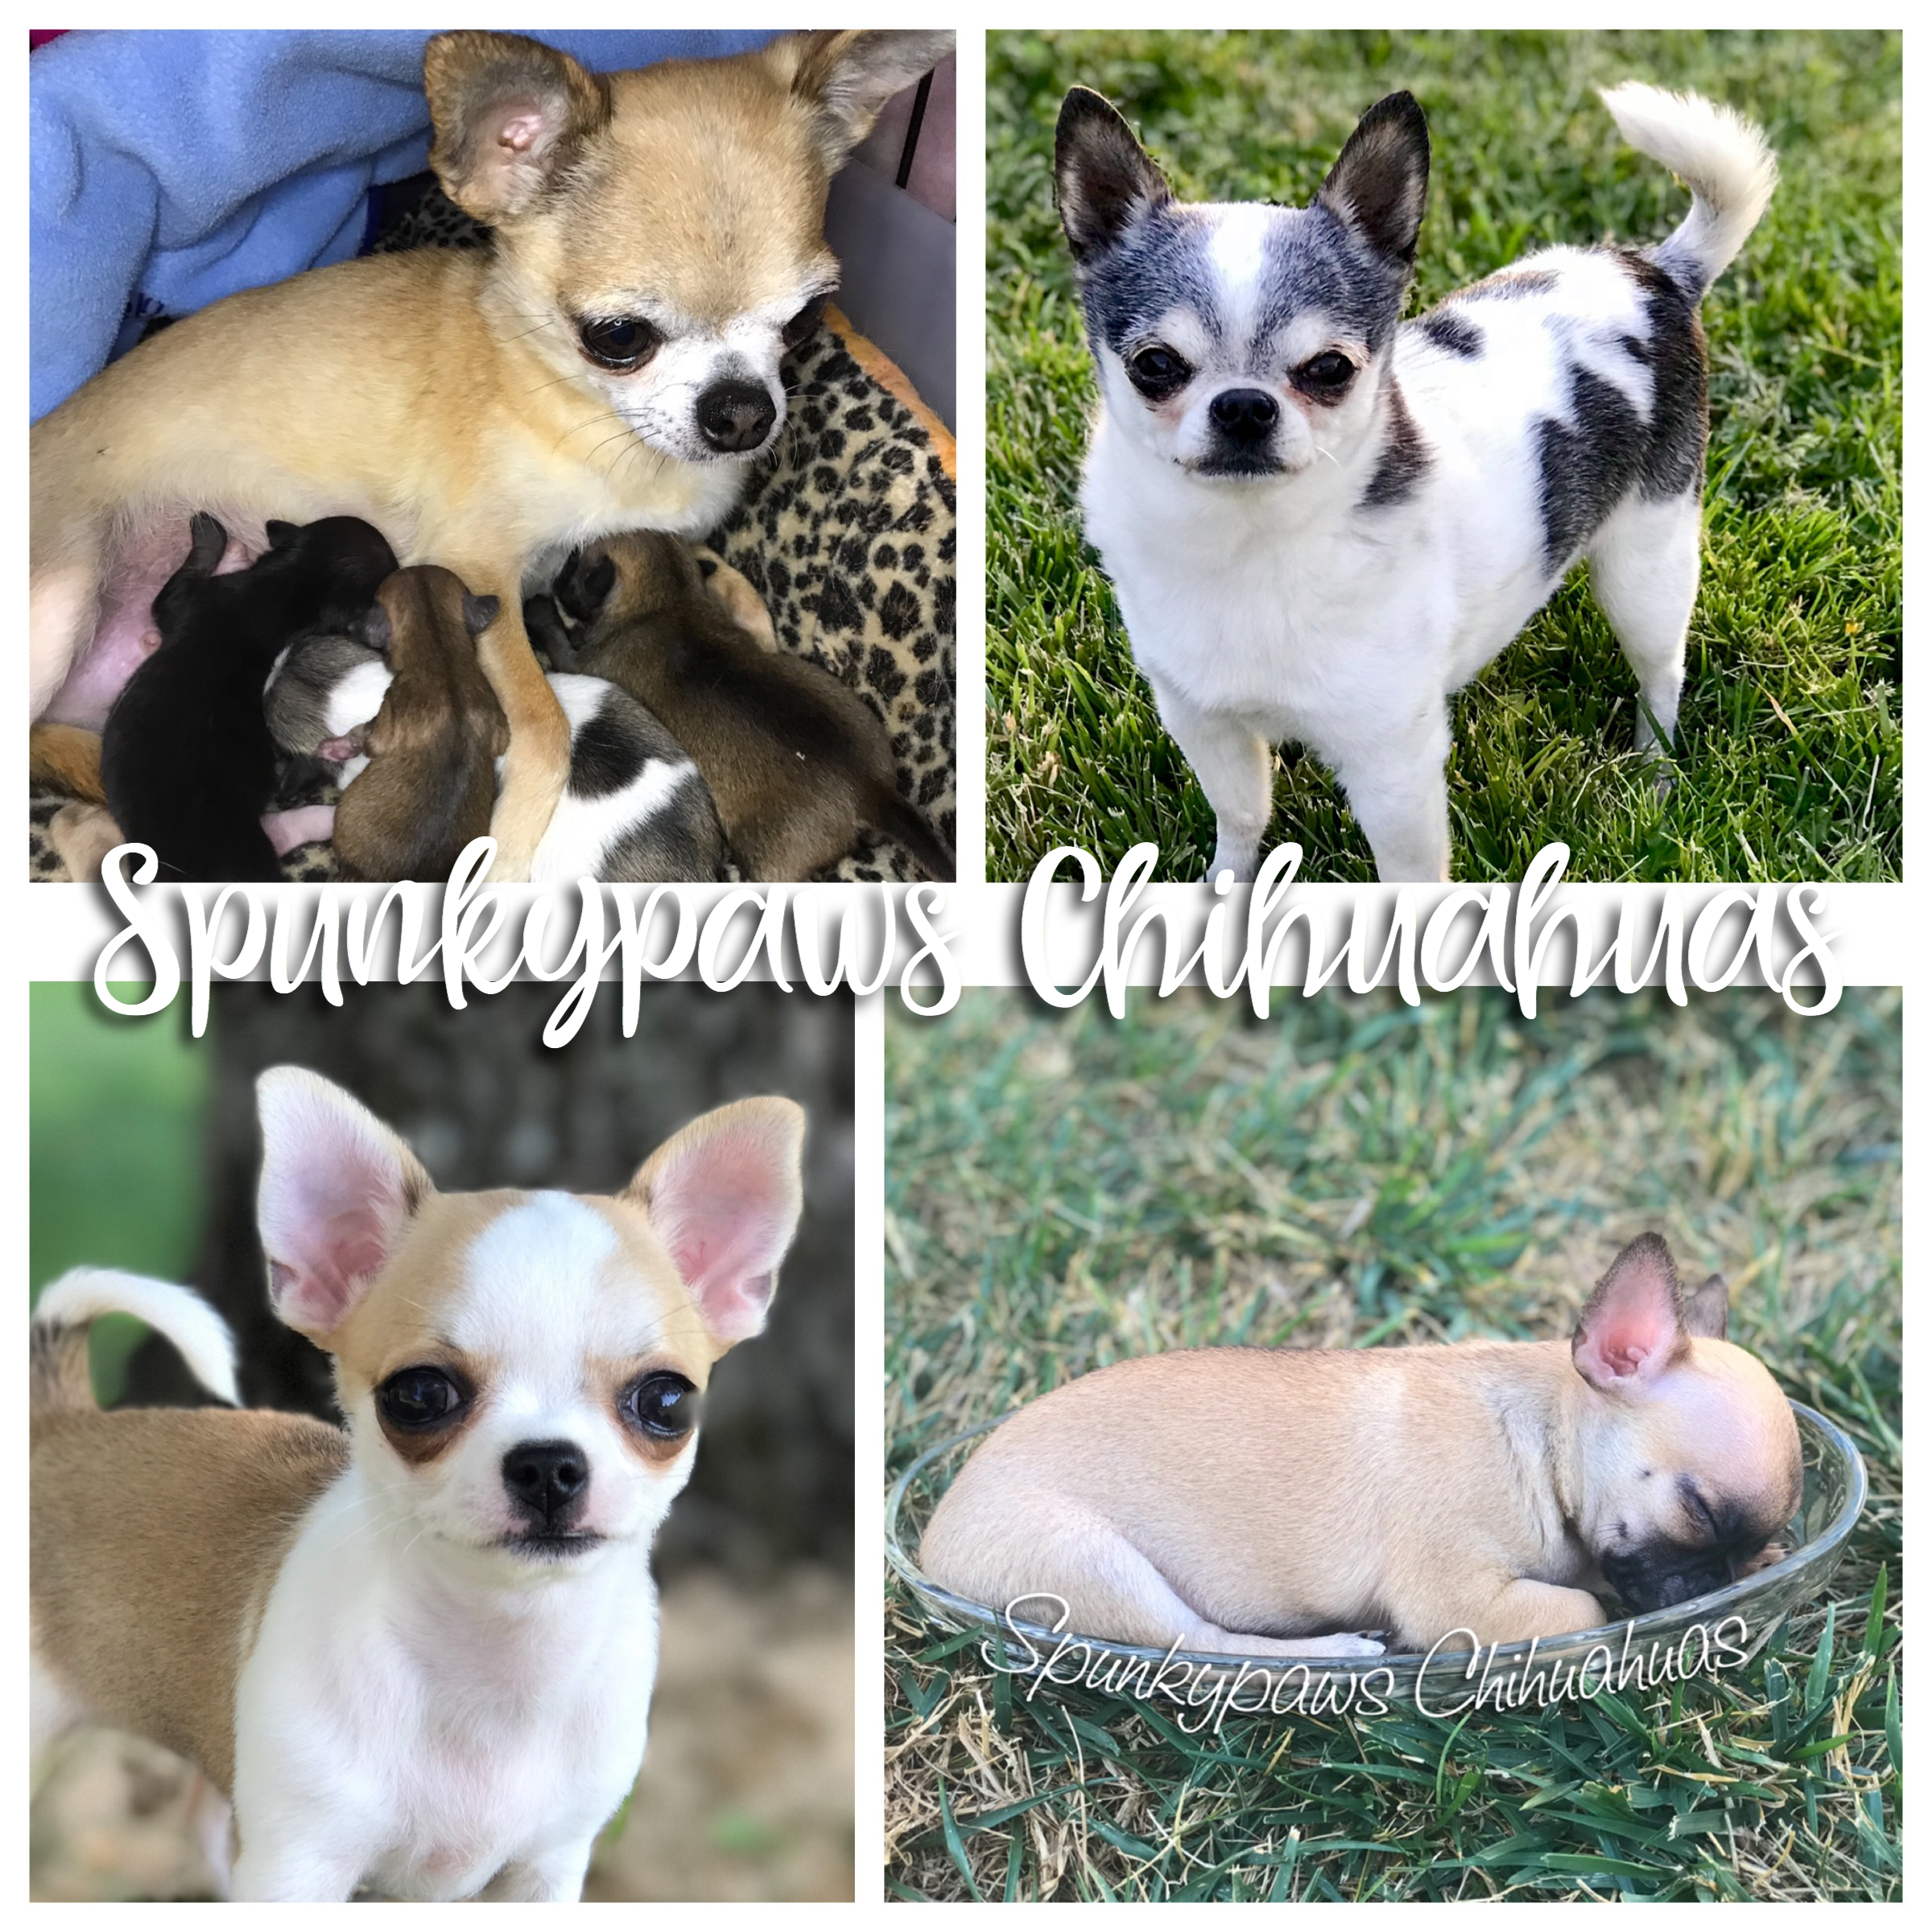 Spunkypaws Chihuahuas